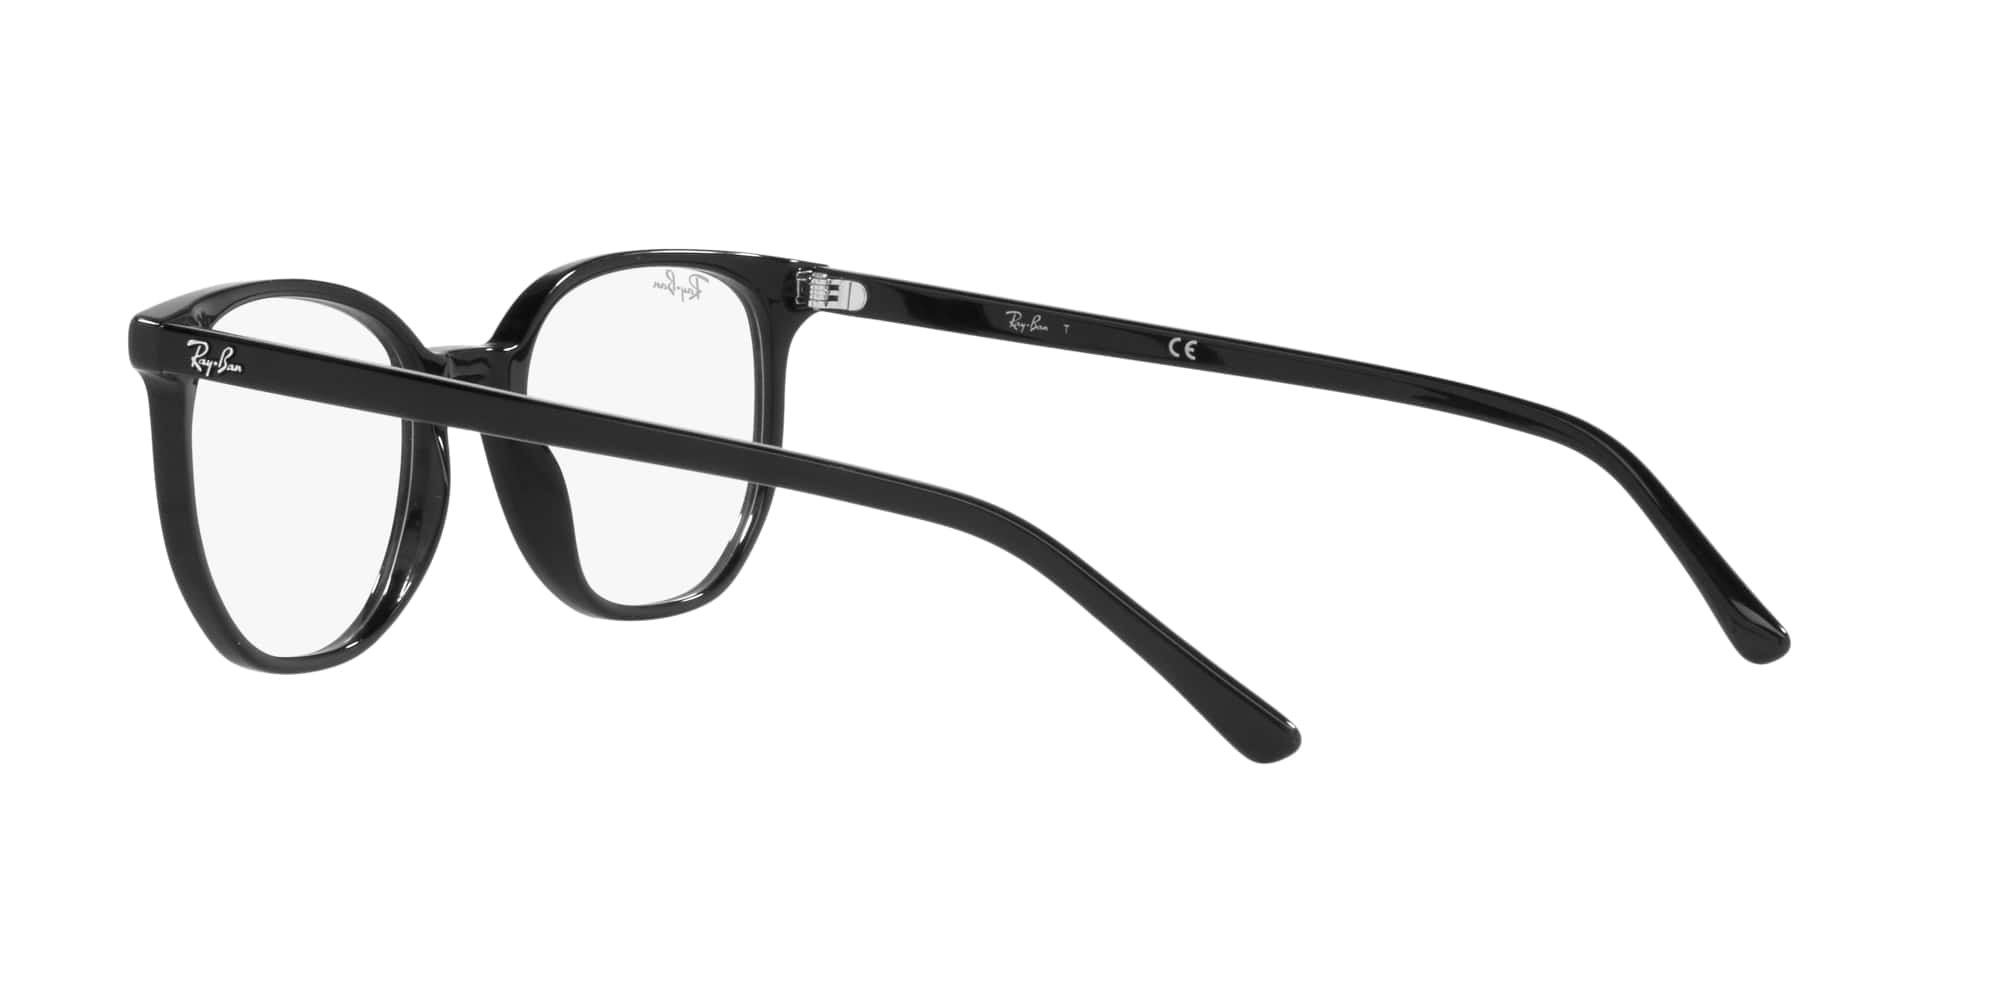 Das Bild zeigt die Korrektionsbrille RX5397 2000 von der Marke Ray Ban in schwarz.